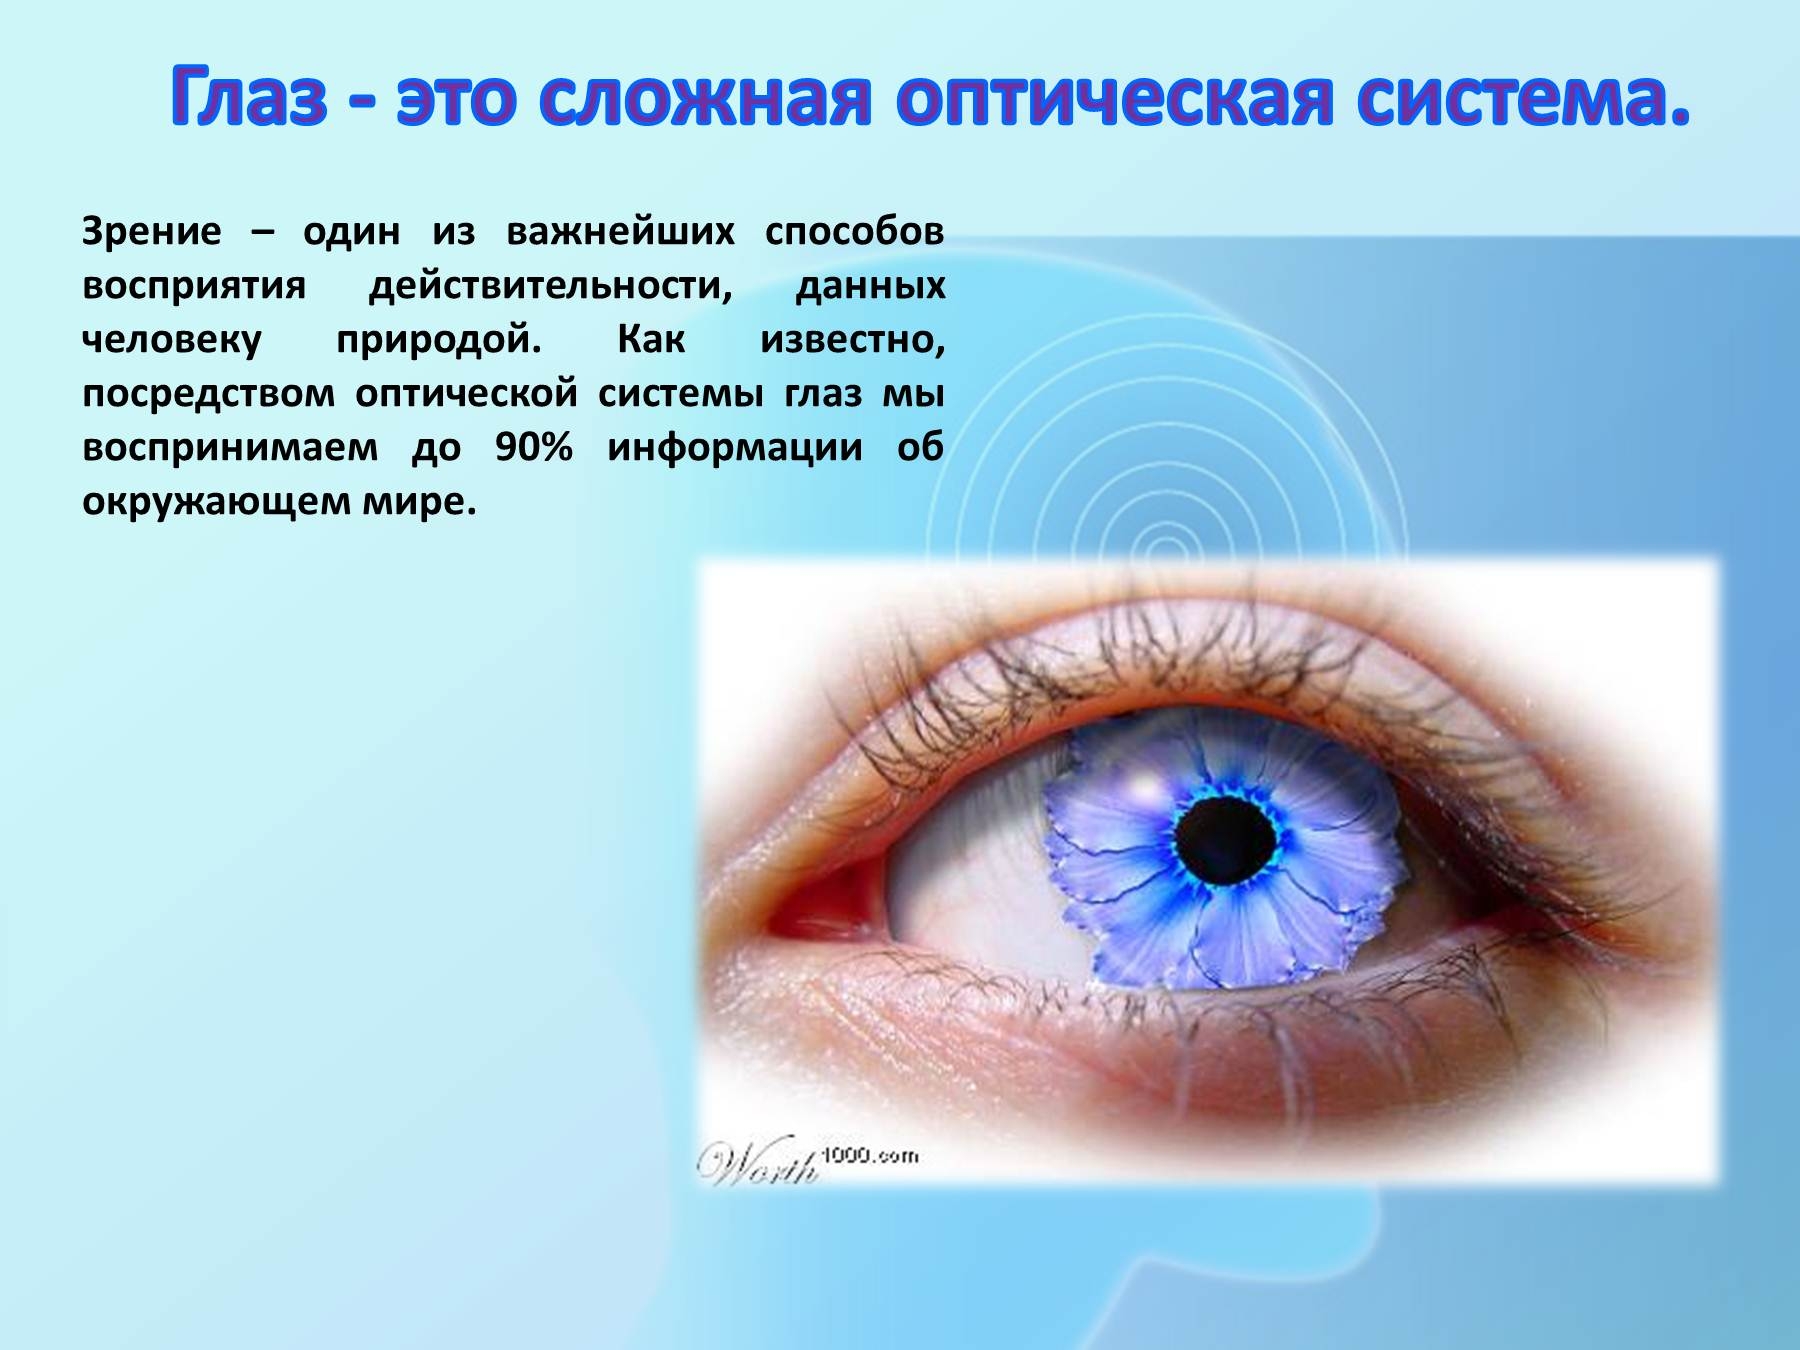 Методы профилактики зрения